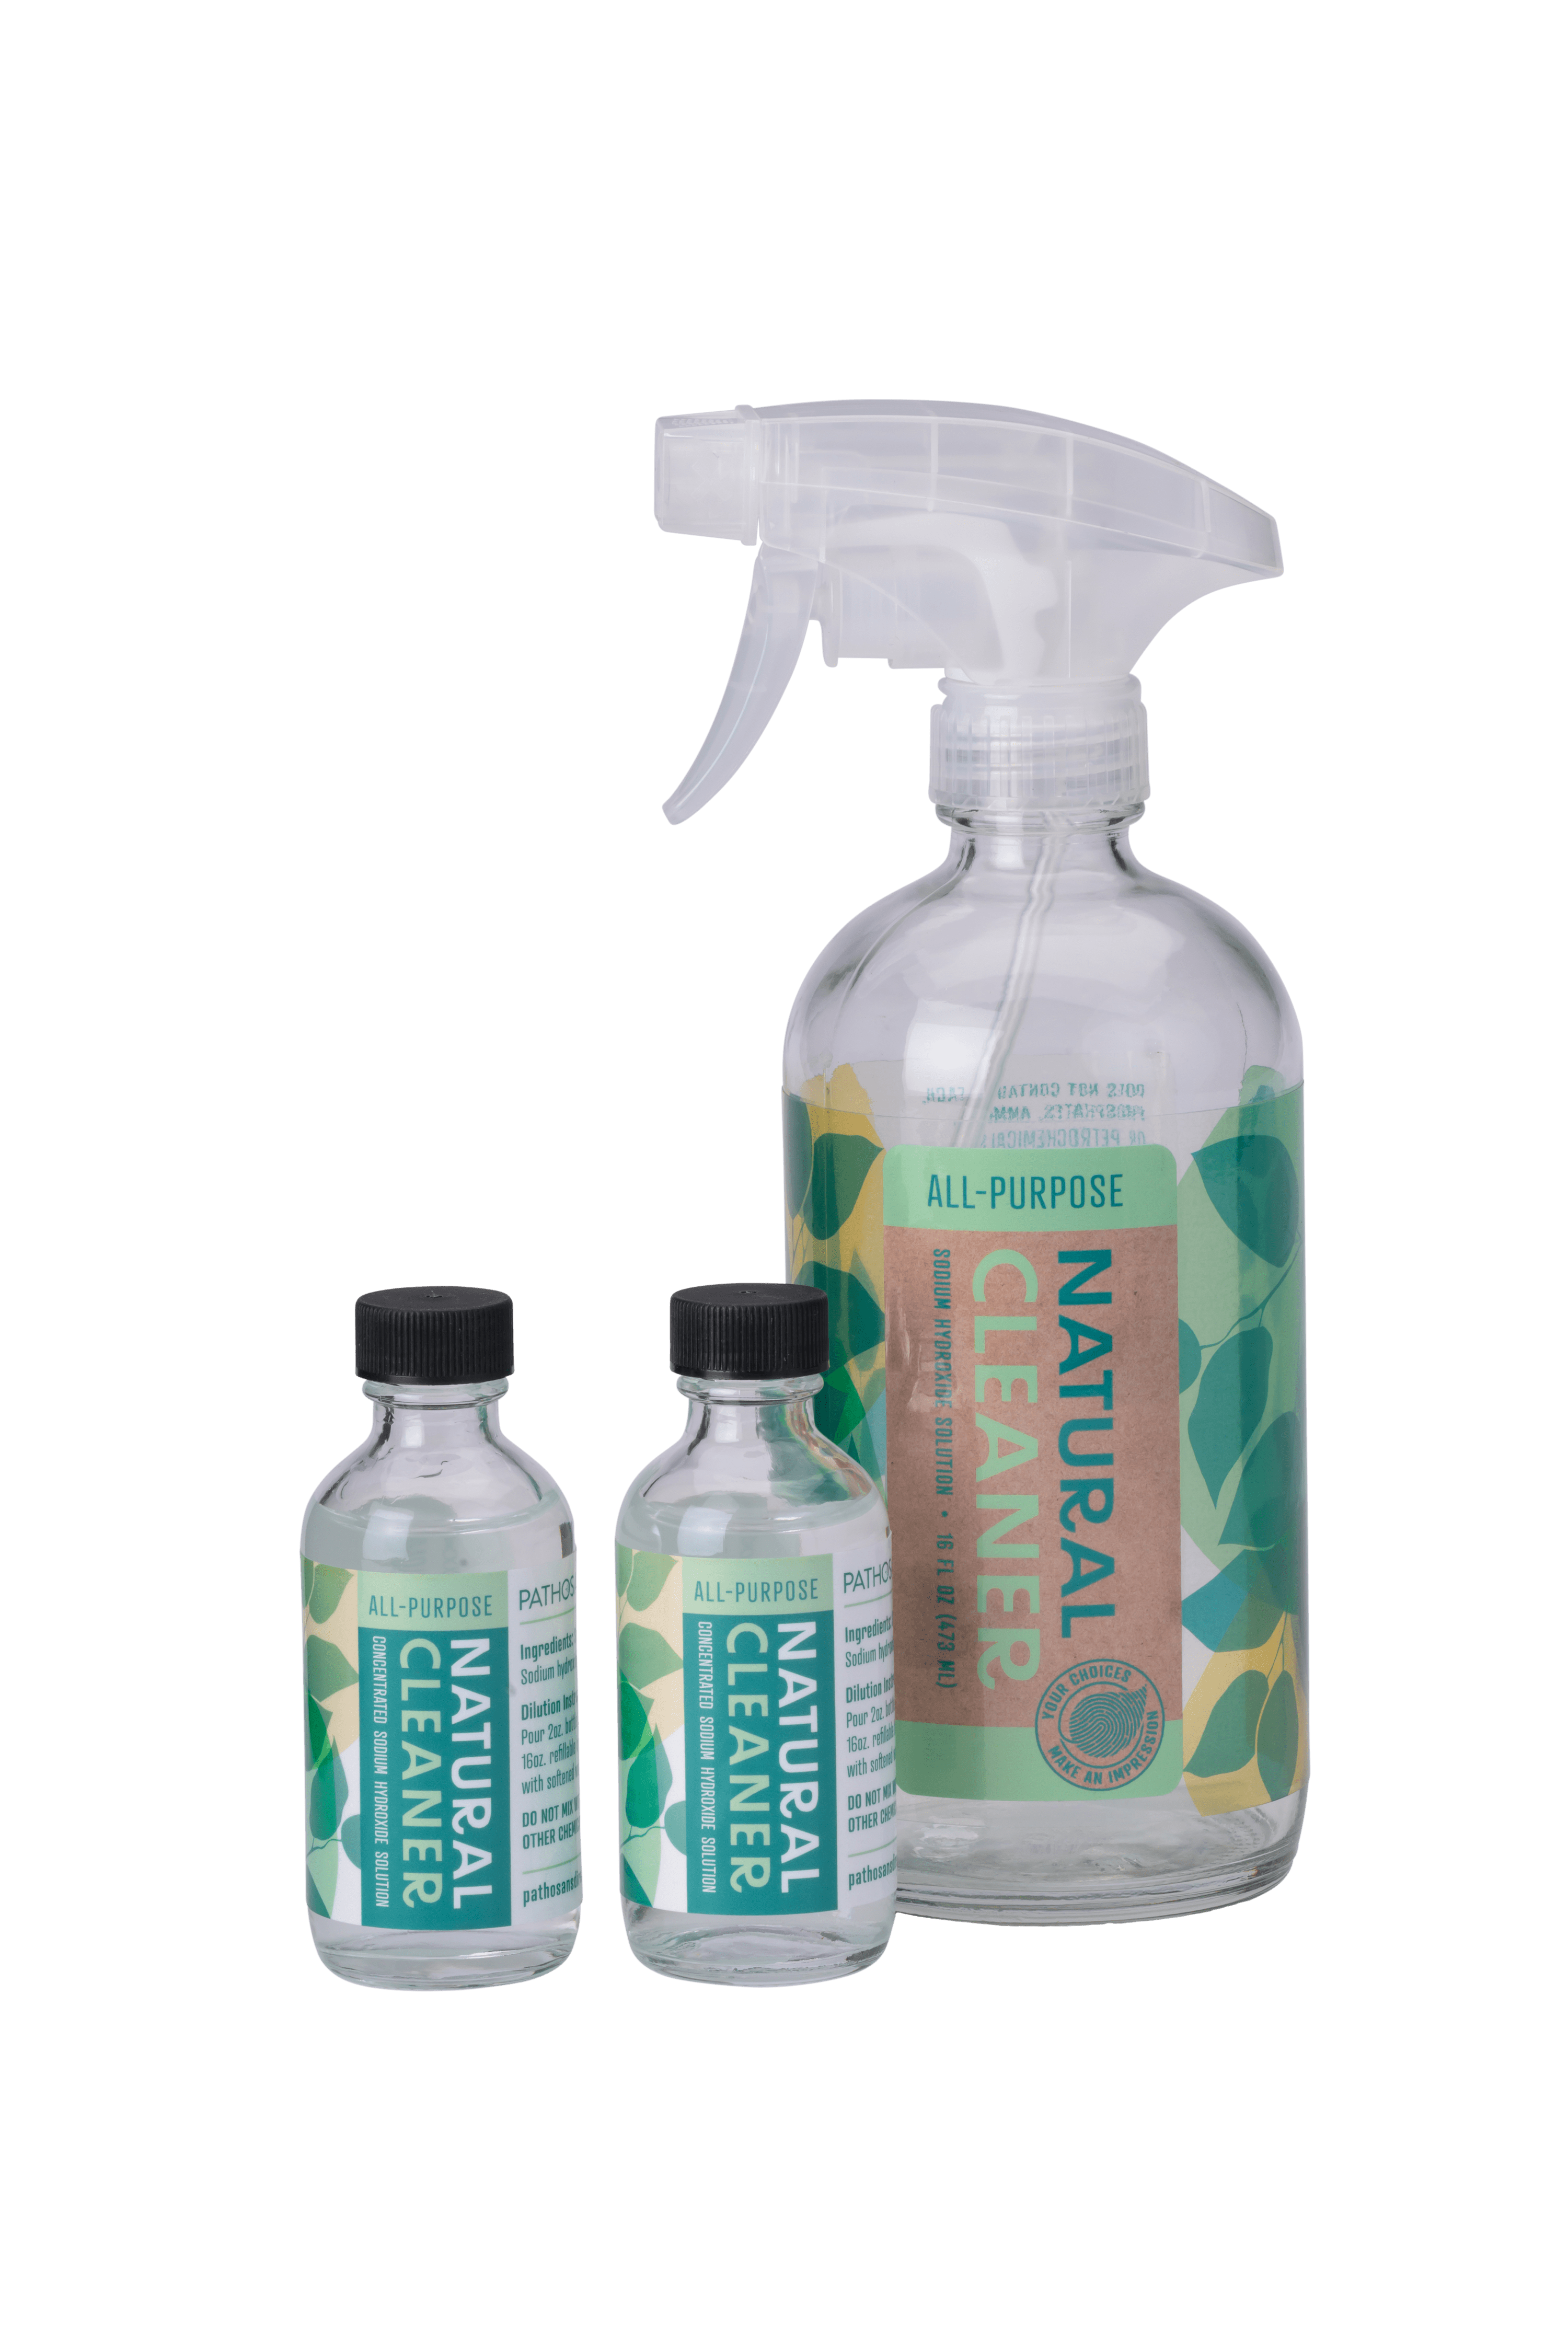 Natural Pumping Spray 2oz - Organic